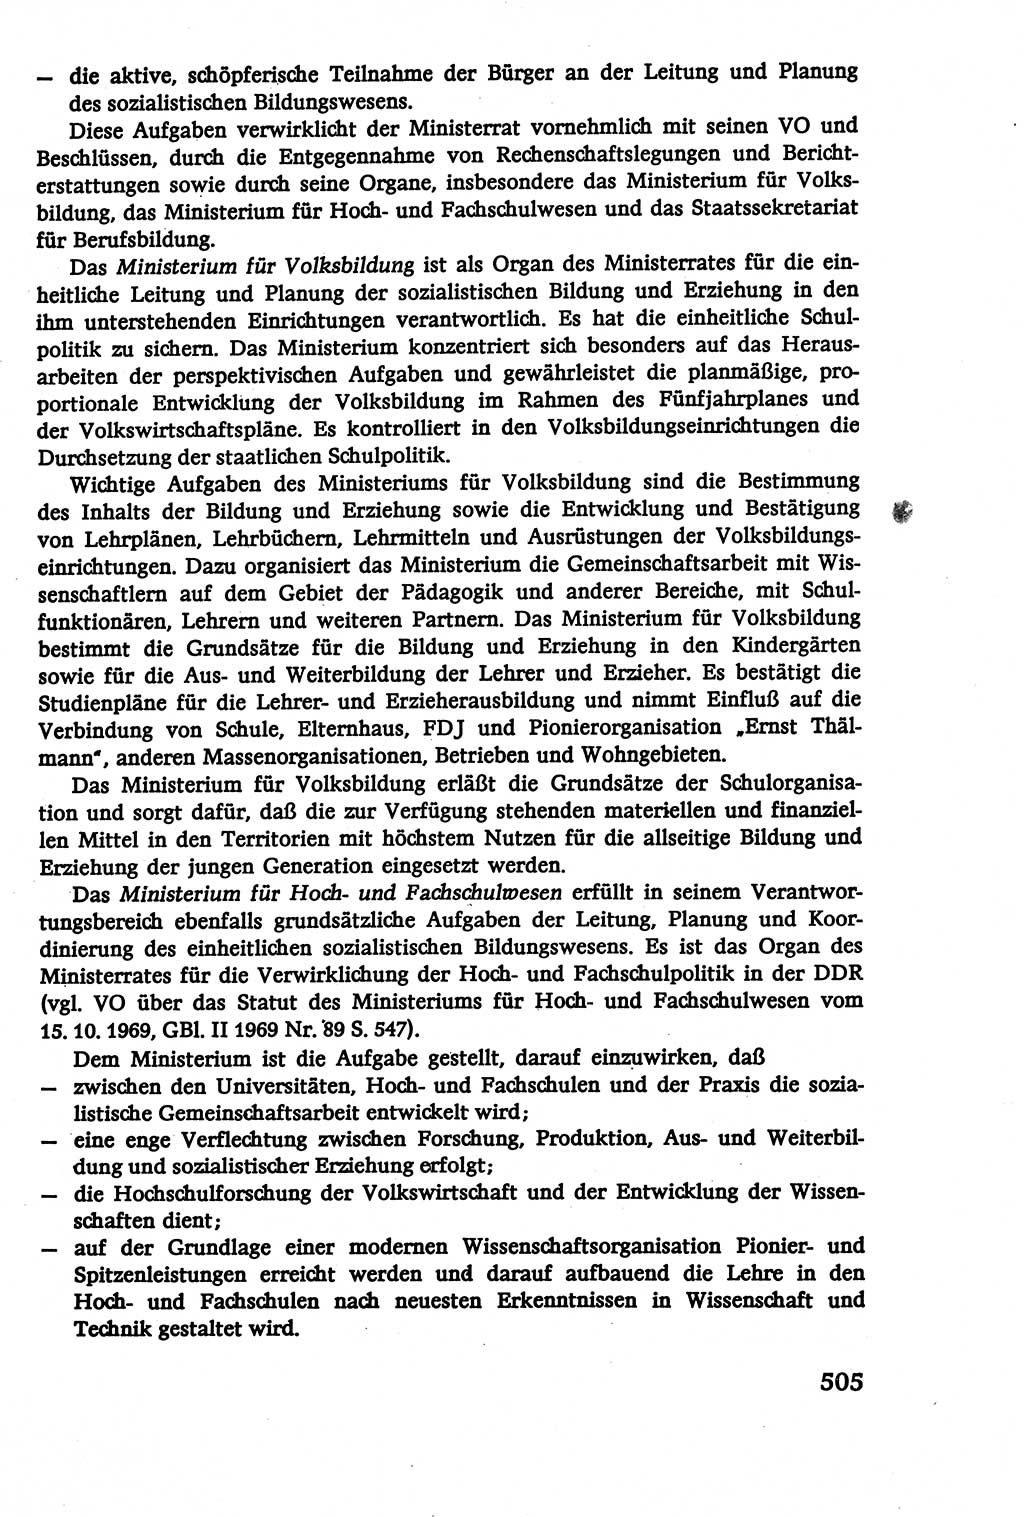 Verwaltungsrecht [Deutsche Demokratische Republik (DDR)], Lehrbuch 1979, Seite 505 (Verw.-R. DDR Lb. 1979, S. 505)